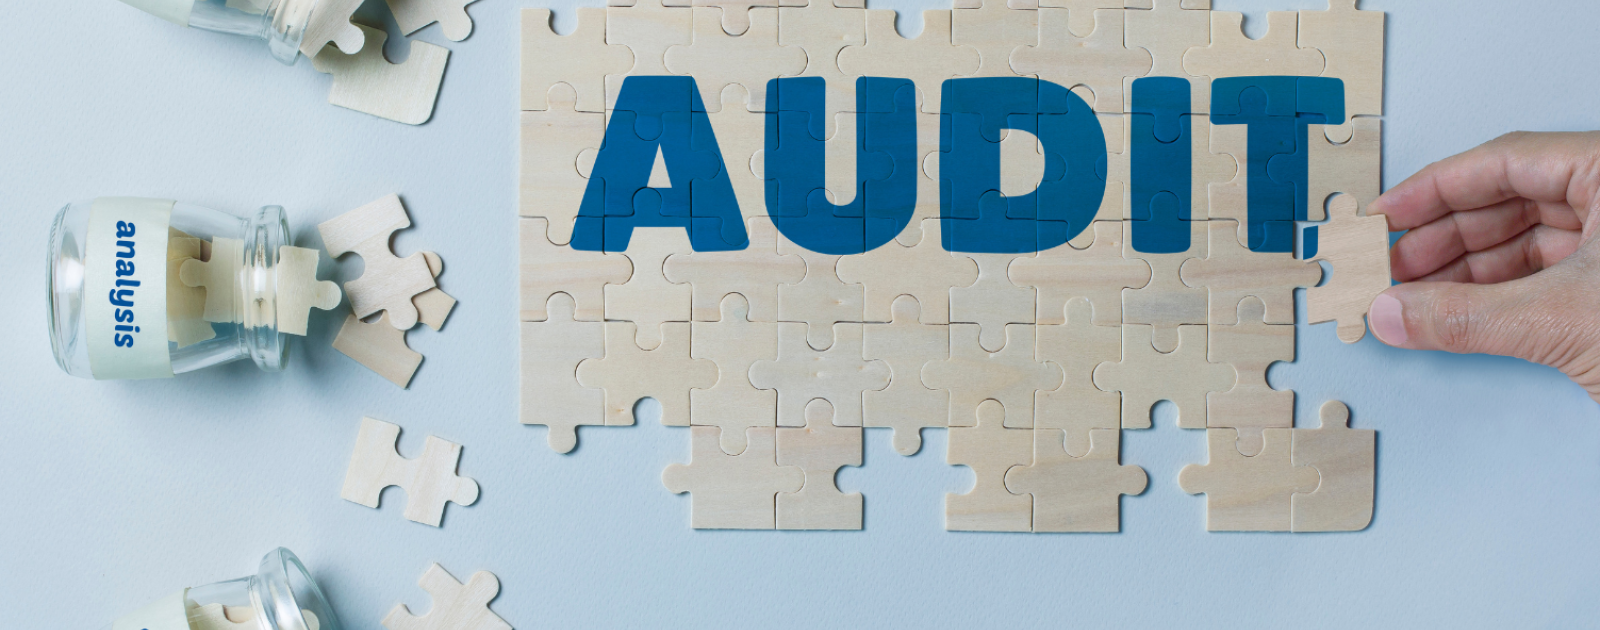 audit puzzle